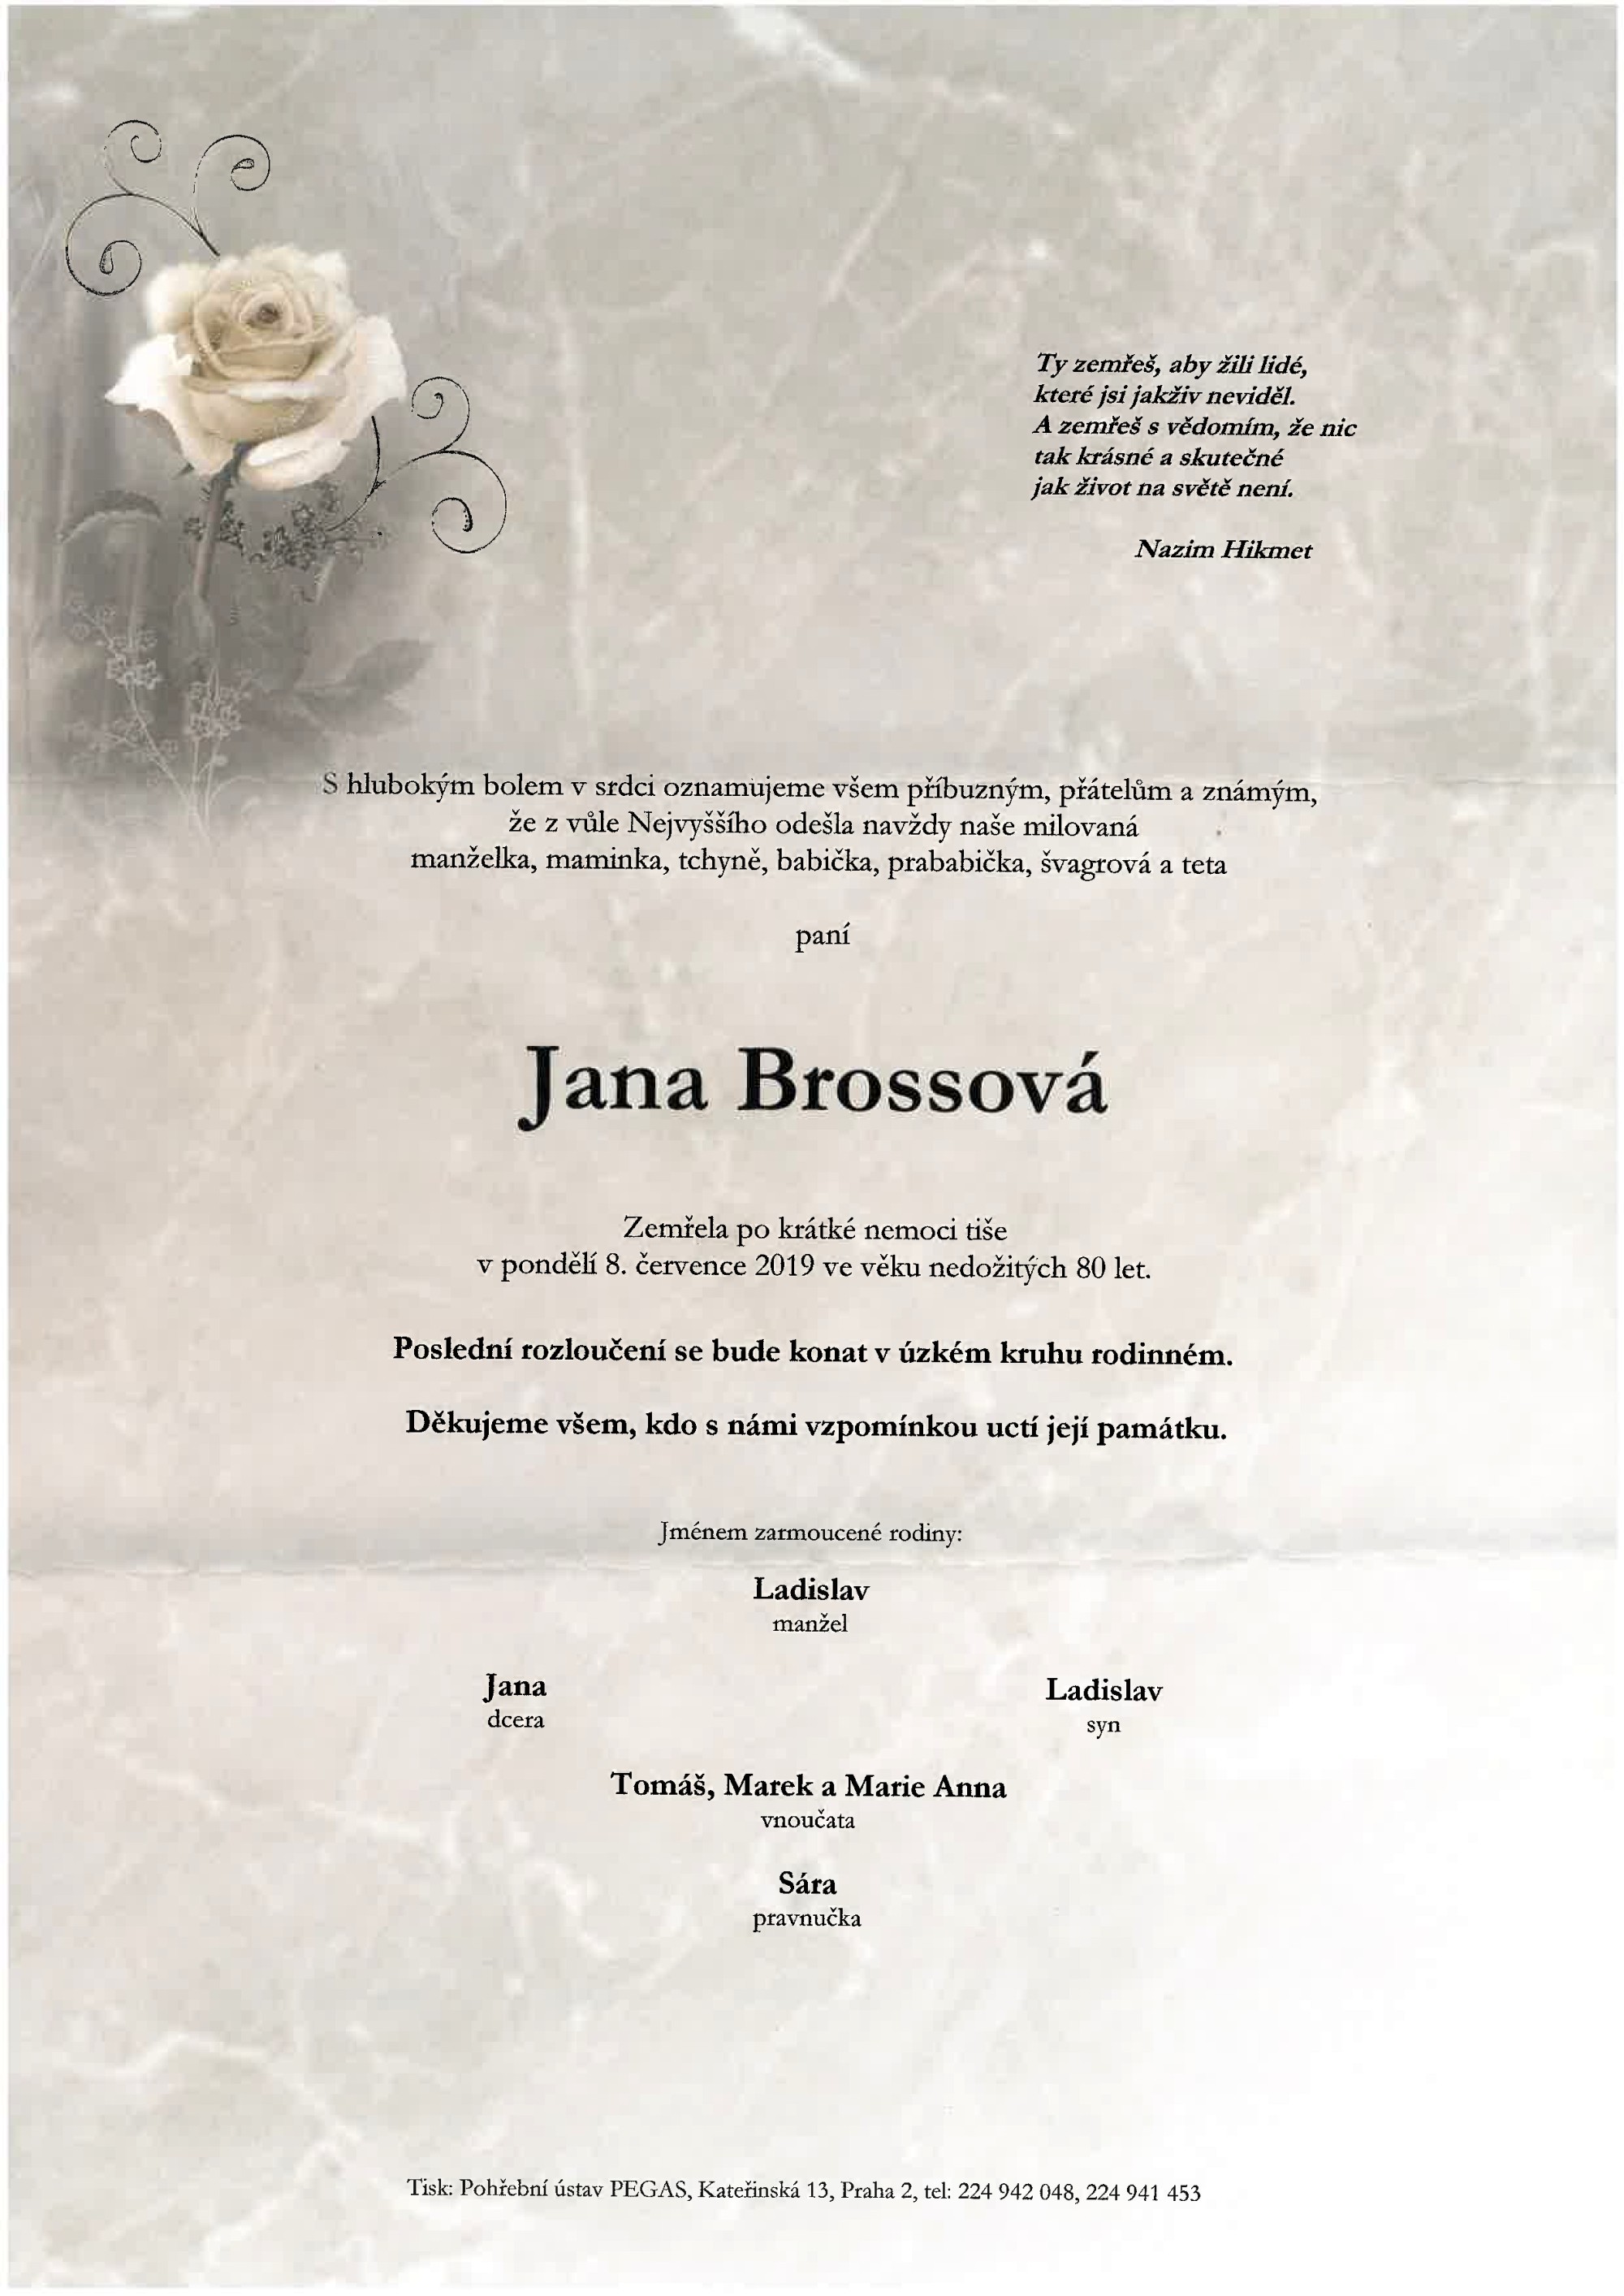 Jana Brossová